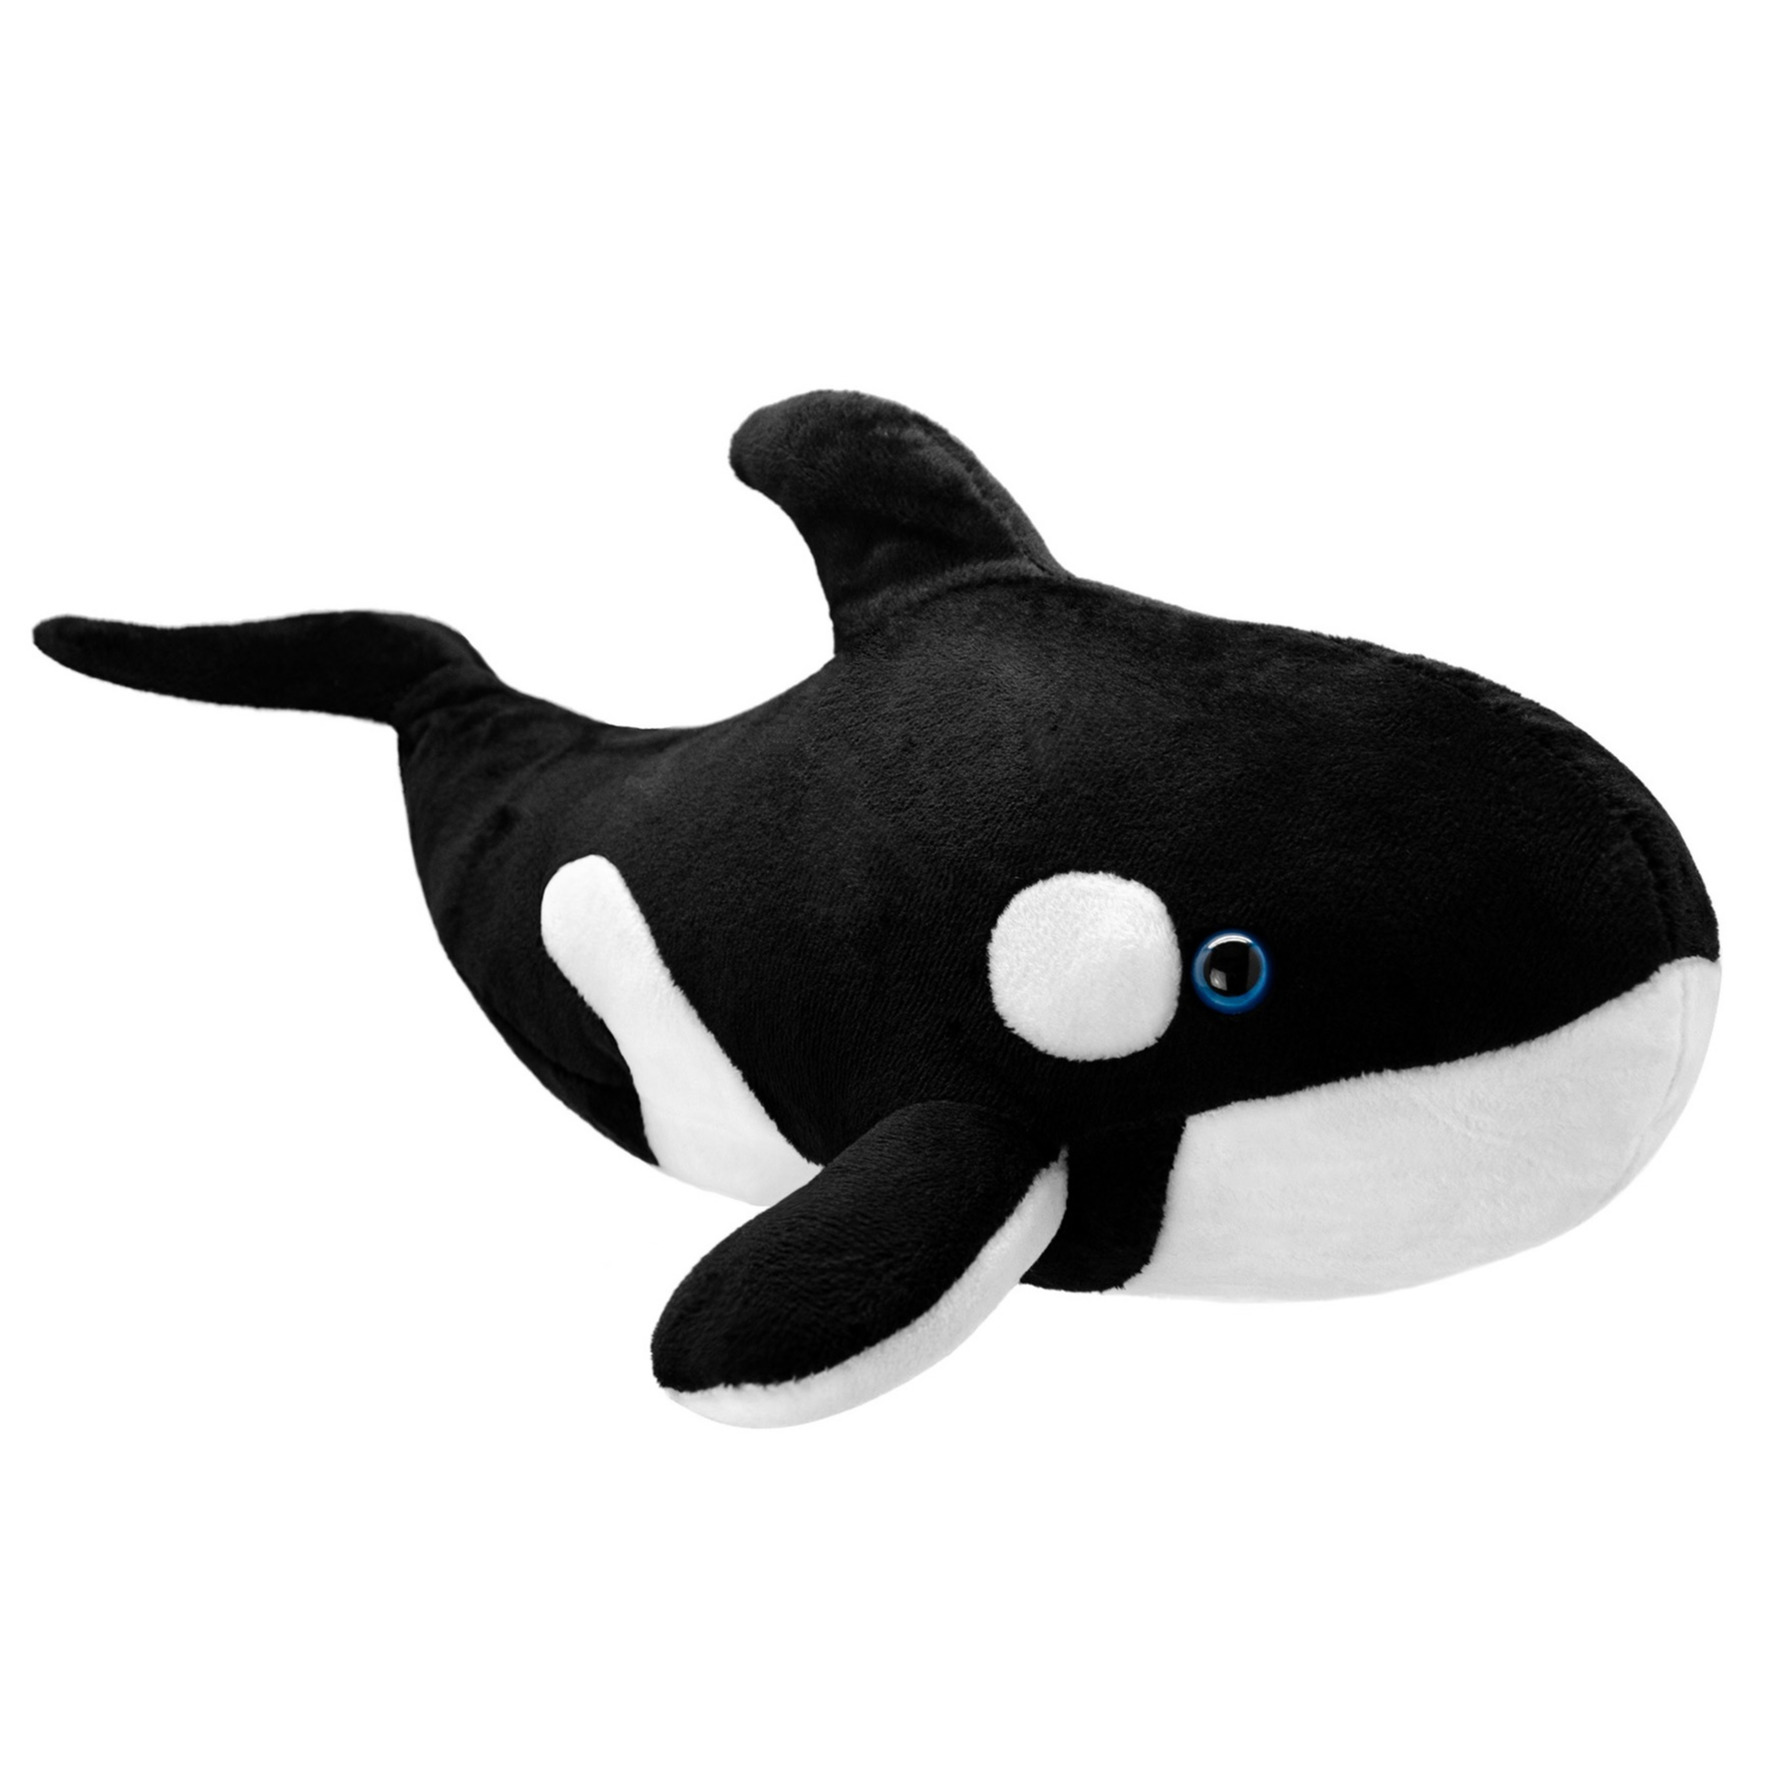 Knuffel orka zwart-wit 38 cm knuffels kopen